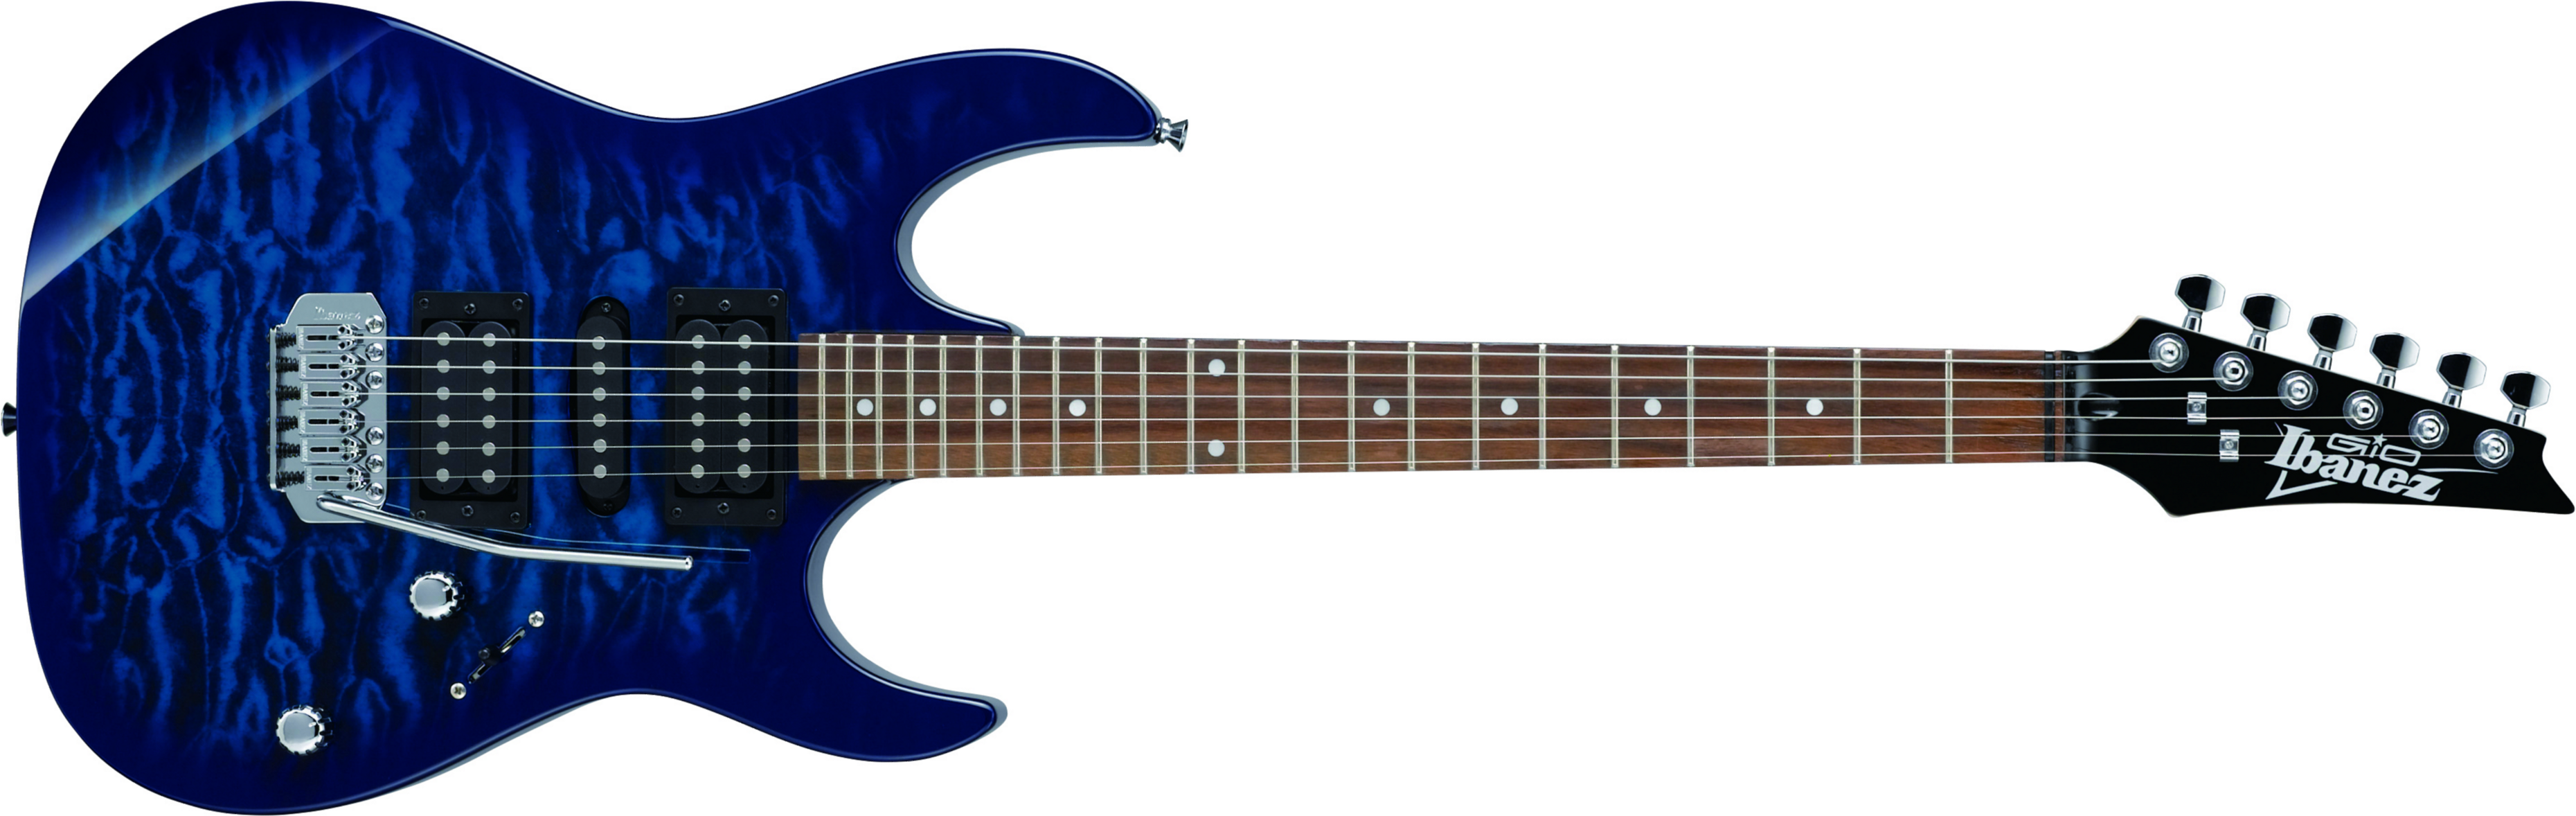 Ibanez Grx70qa Tbb Gio Hsh Trem Nzp - Transparent Blue Burst - Guitarra eléctrica con forma de str. - Main picture